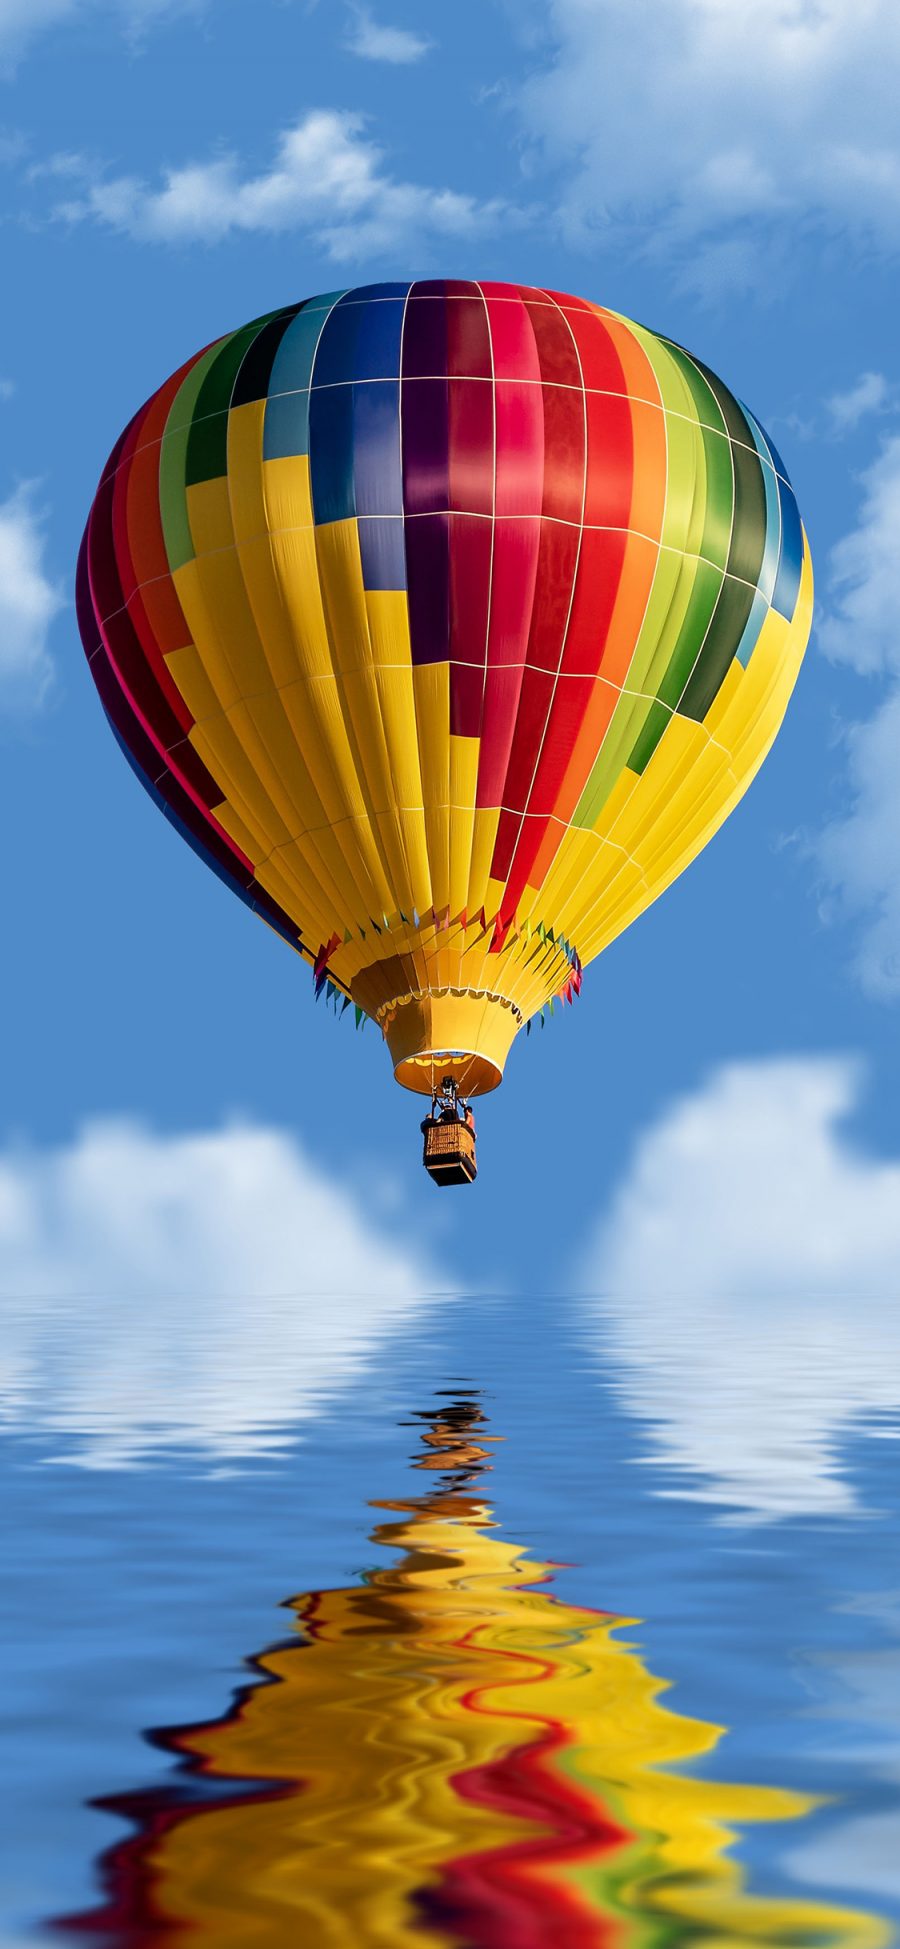 [2436×1125]热气球 倒影 天空 水面 苹果手机壁纸图片